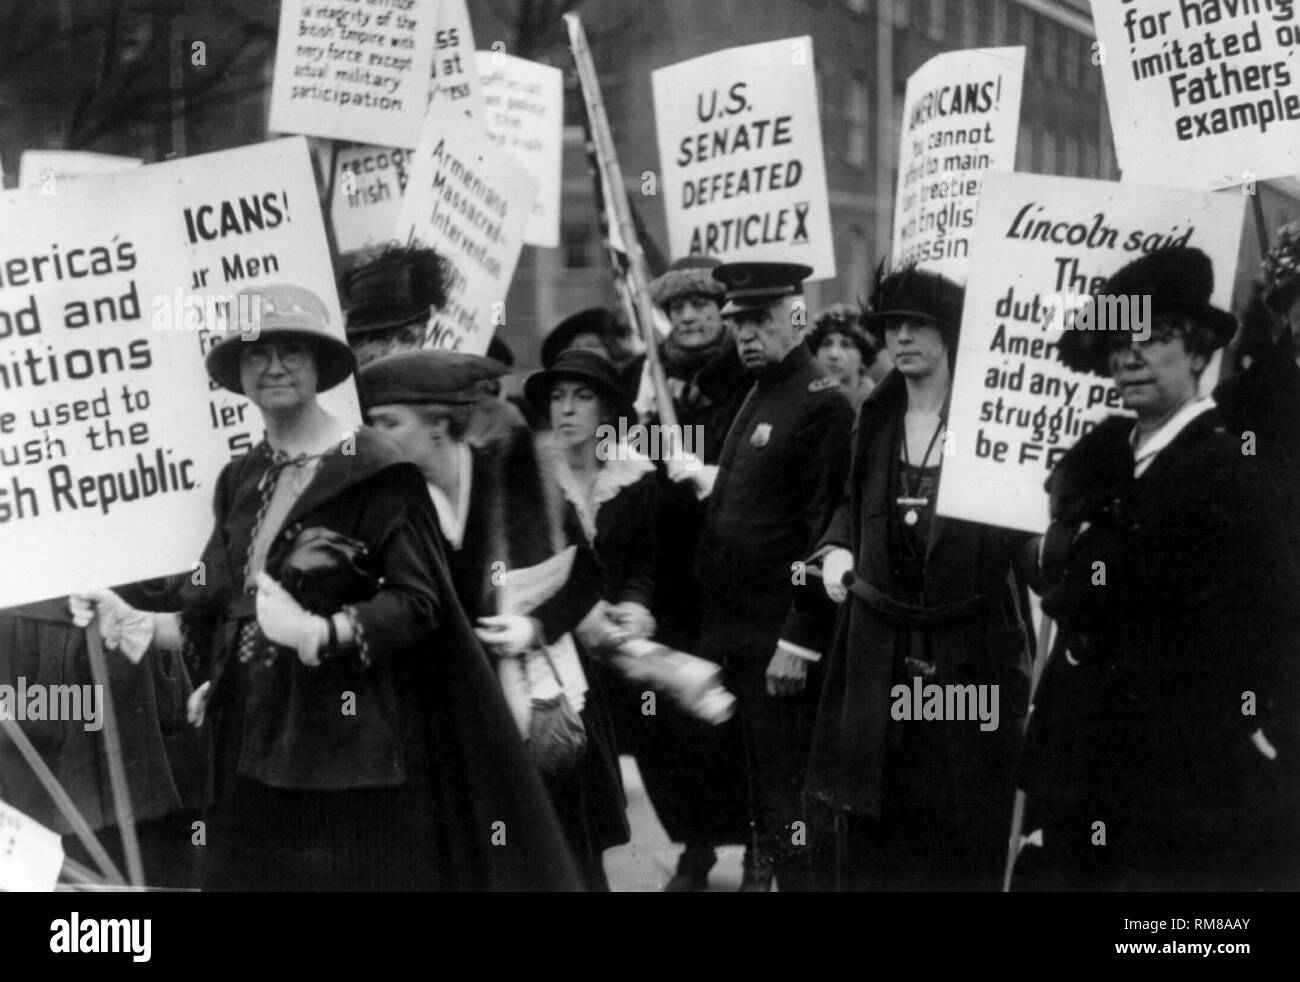 Proteste in Amerika über die irische Unabhängigkeit c 1920 und wie die US-Lebensmittel und Munition wurden verwendet, um die Irische Republik Bild mit digitalen Restaurierung und Retusche Techniken aktualisiert zu zerquetschen Stockfoto